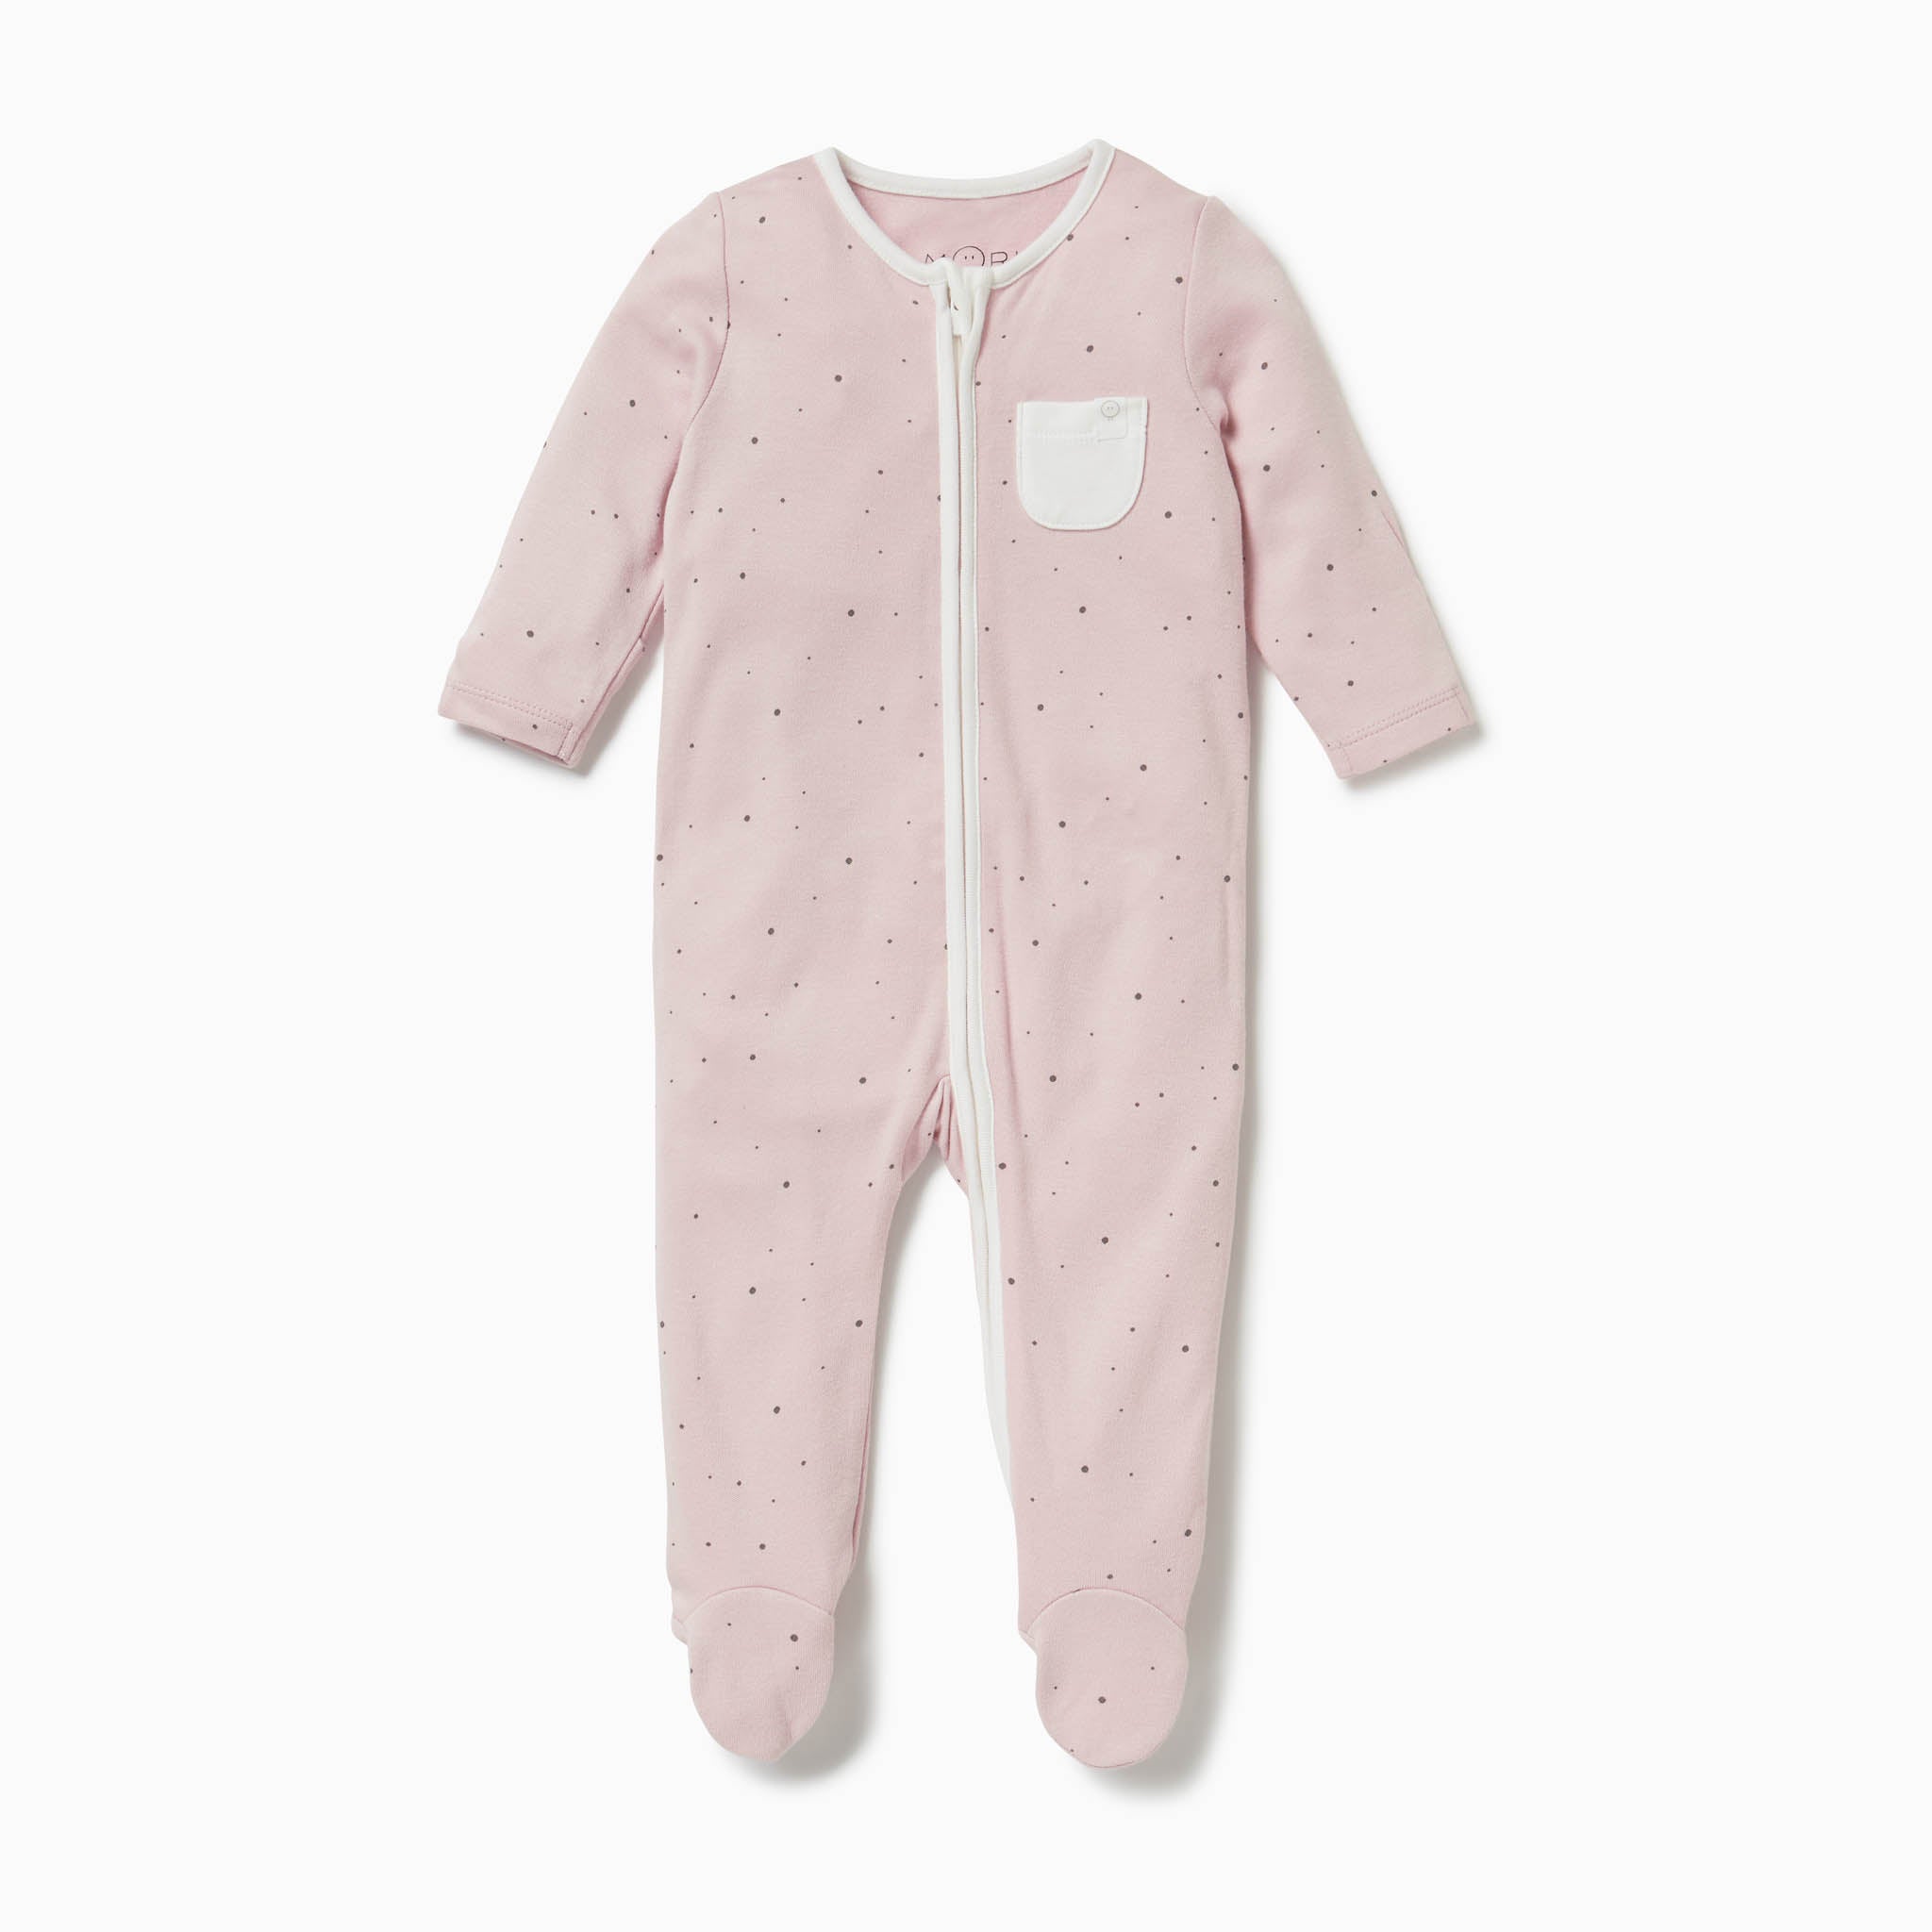 Baby Zip Up Sleepsuits | Organic Zip-Up Baby Sleepsuits | MORI